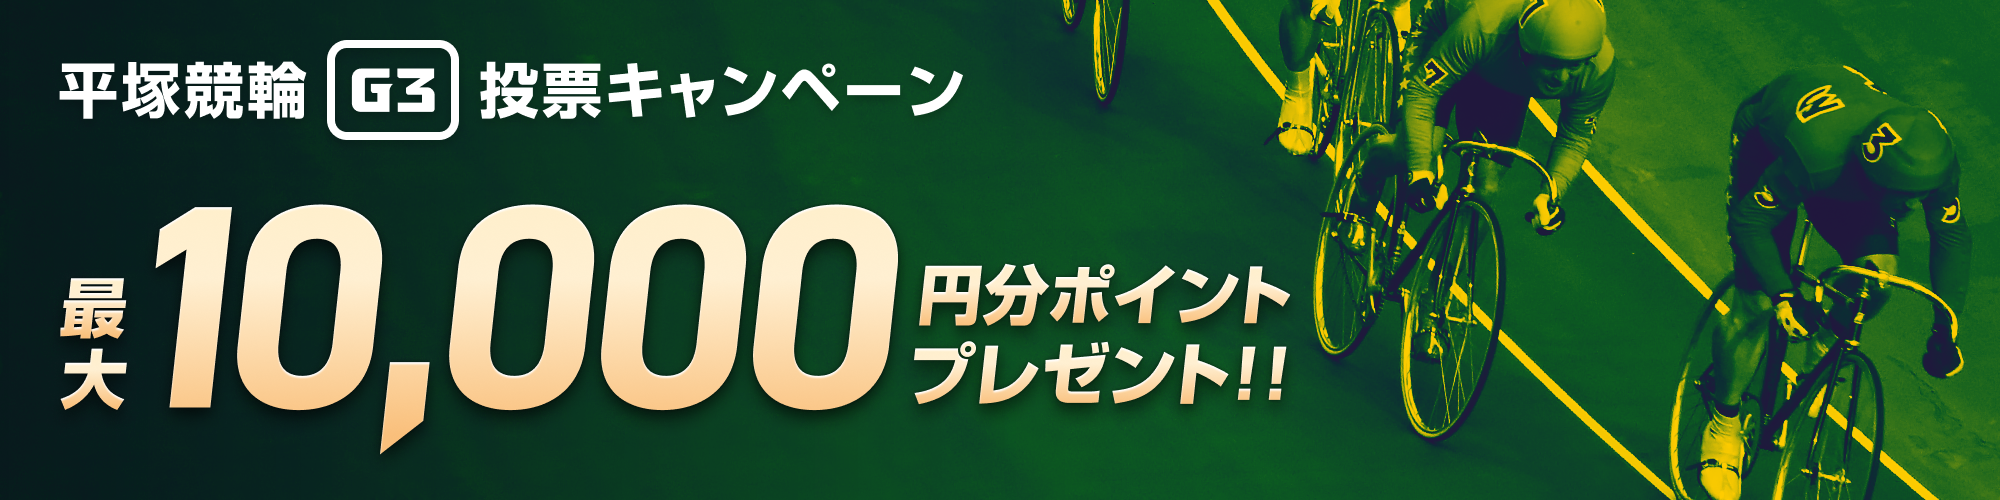 平塚競輪G3投票キャンペーン最大10,000円分のポイントプレゼント